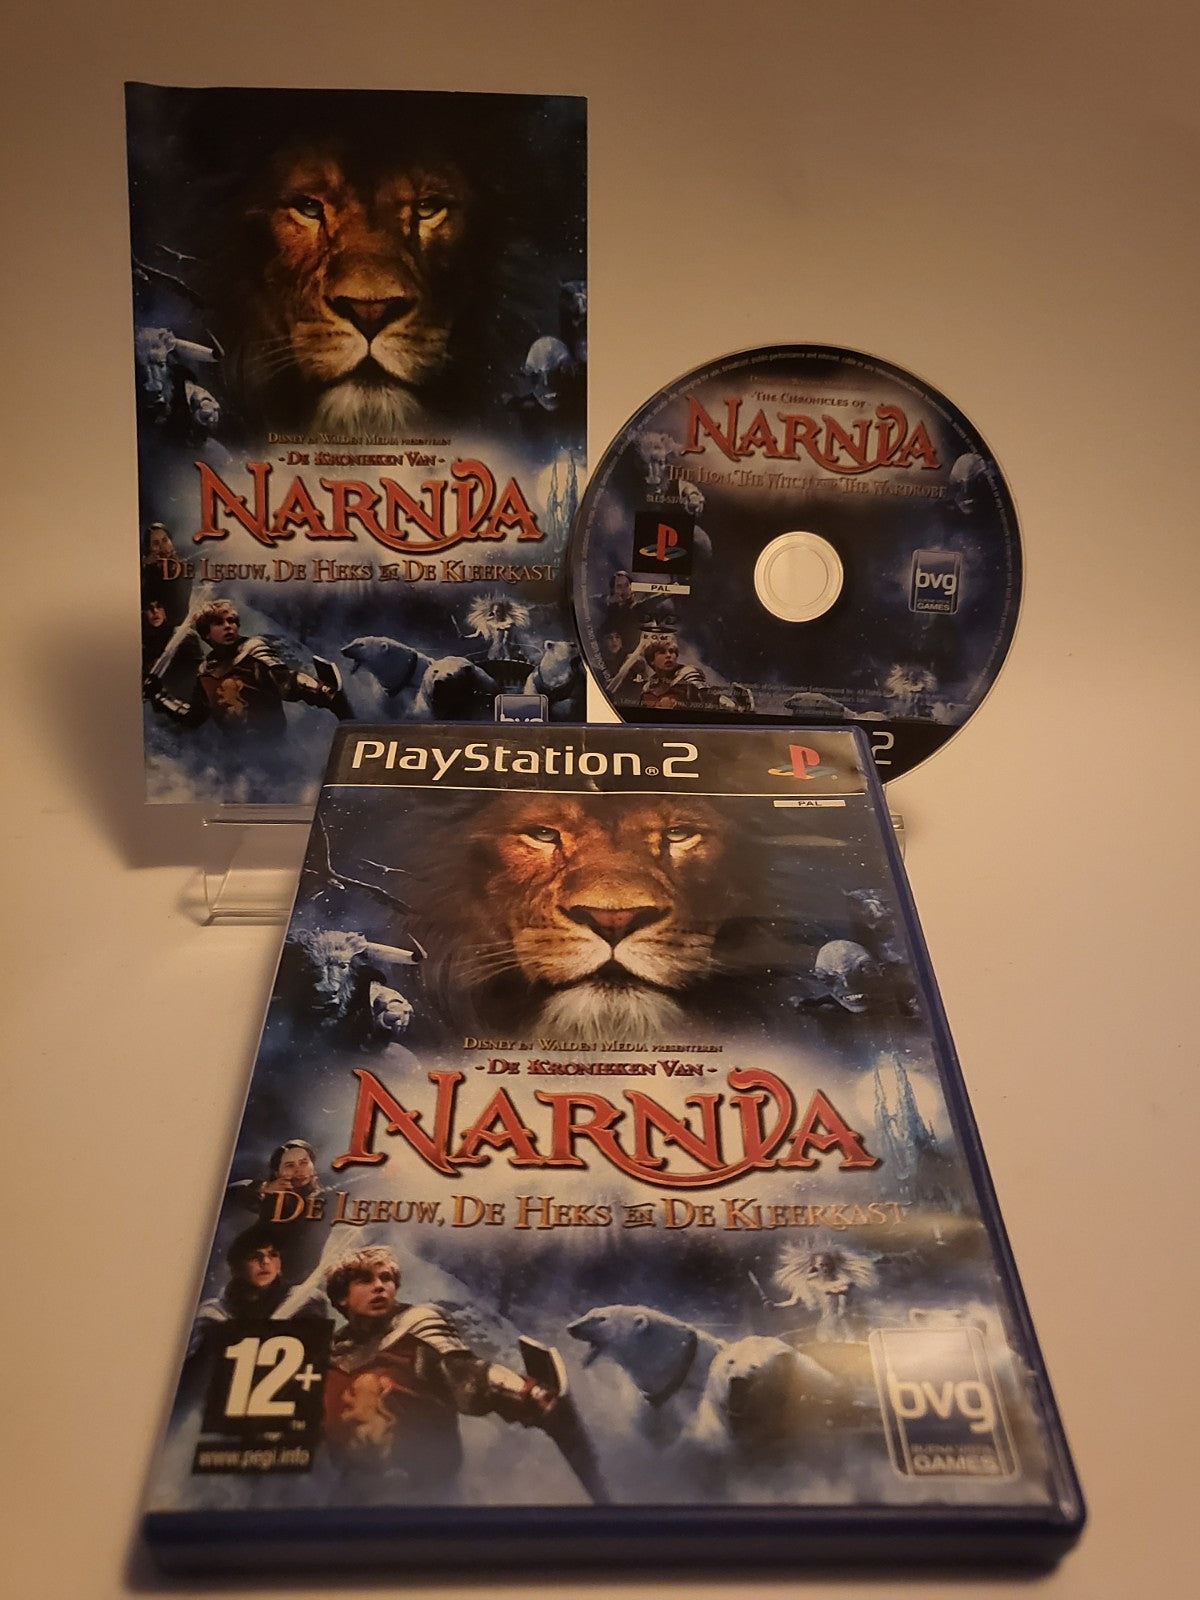 De Kronieken van Narnia de Leeuw, de Heks en de Kleerkast Playstation 2